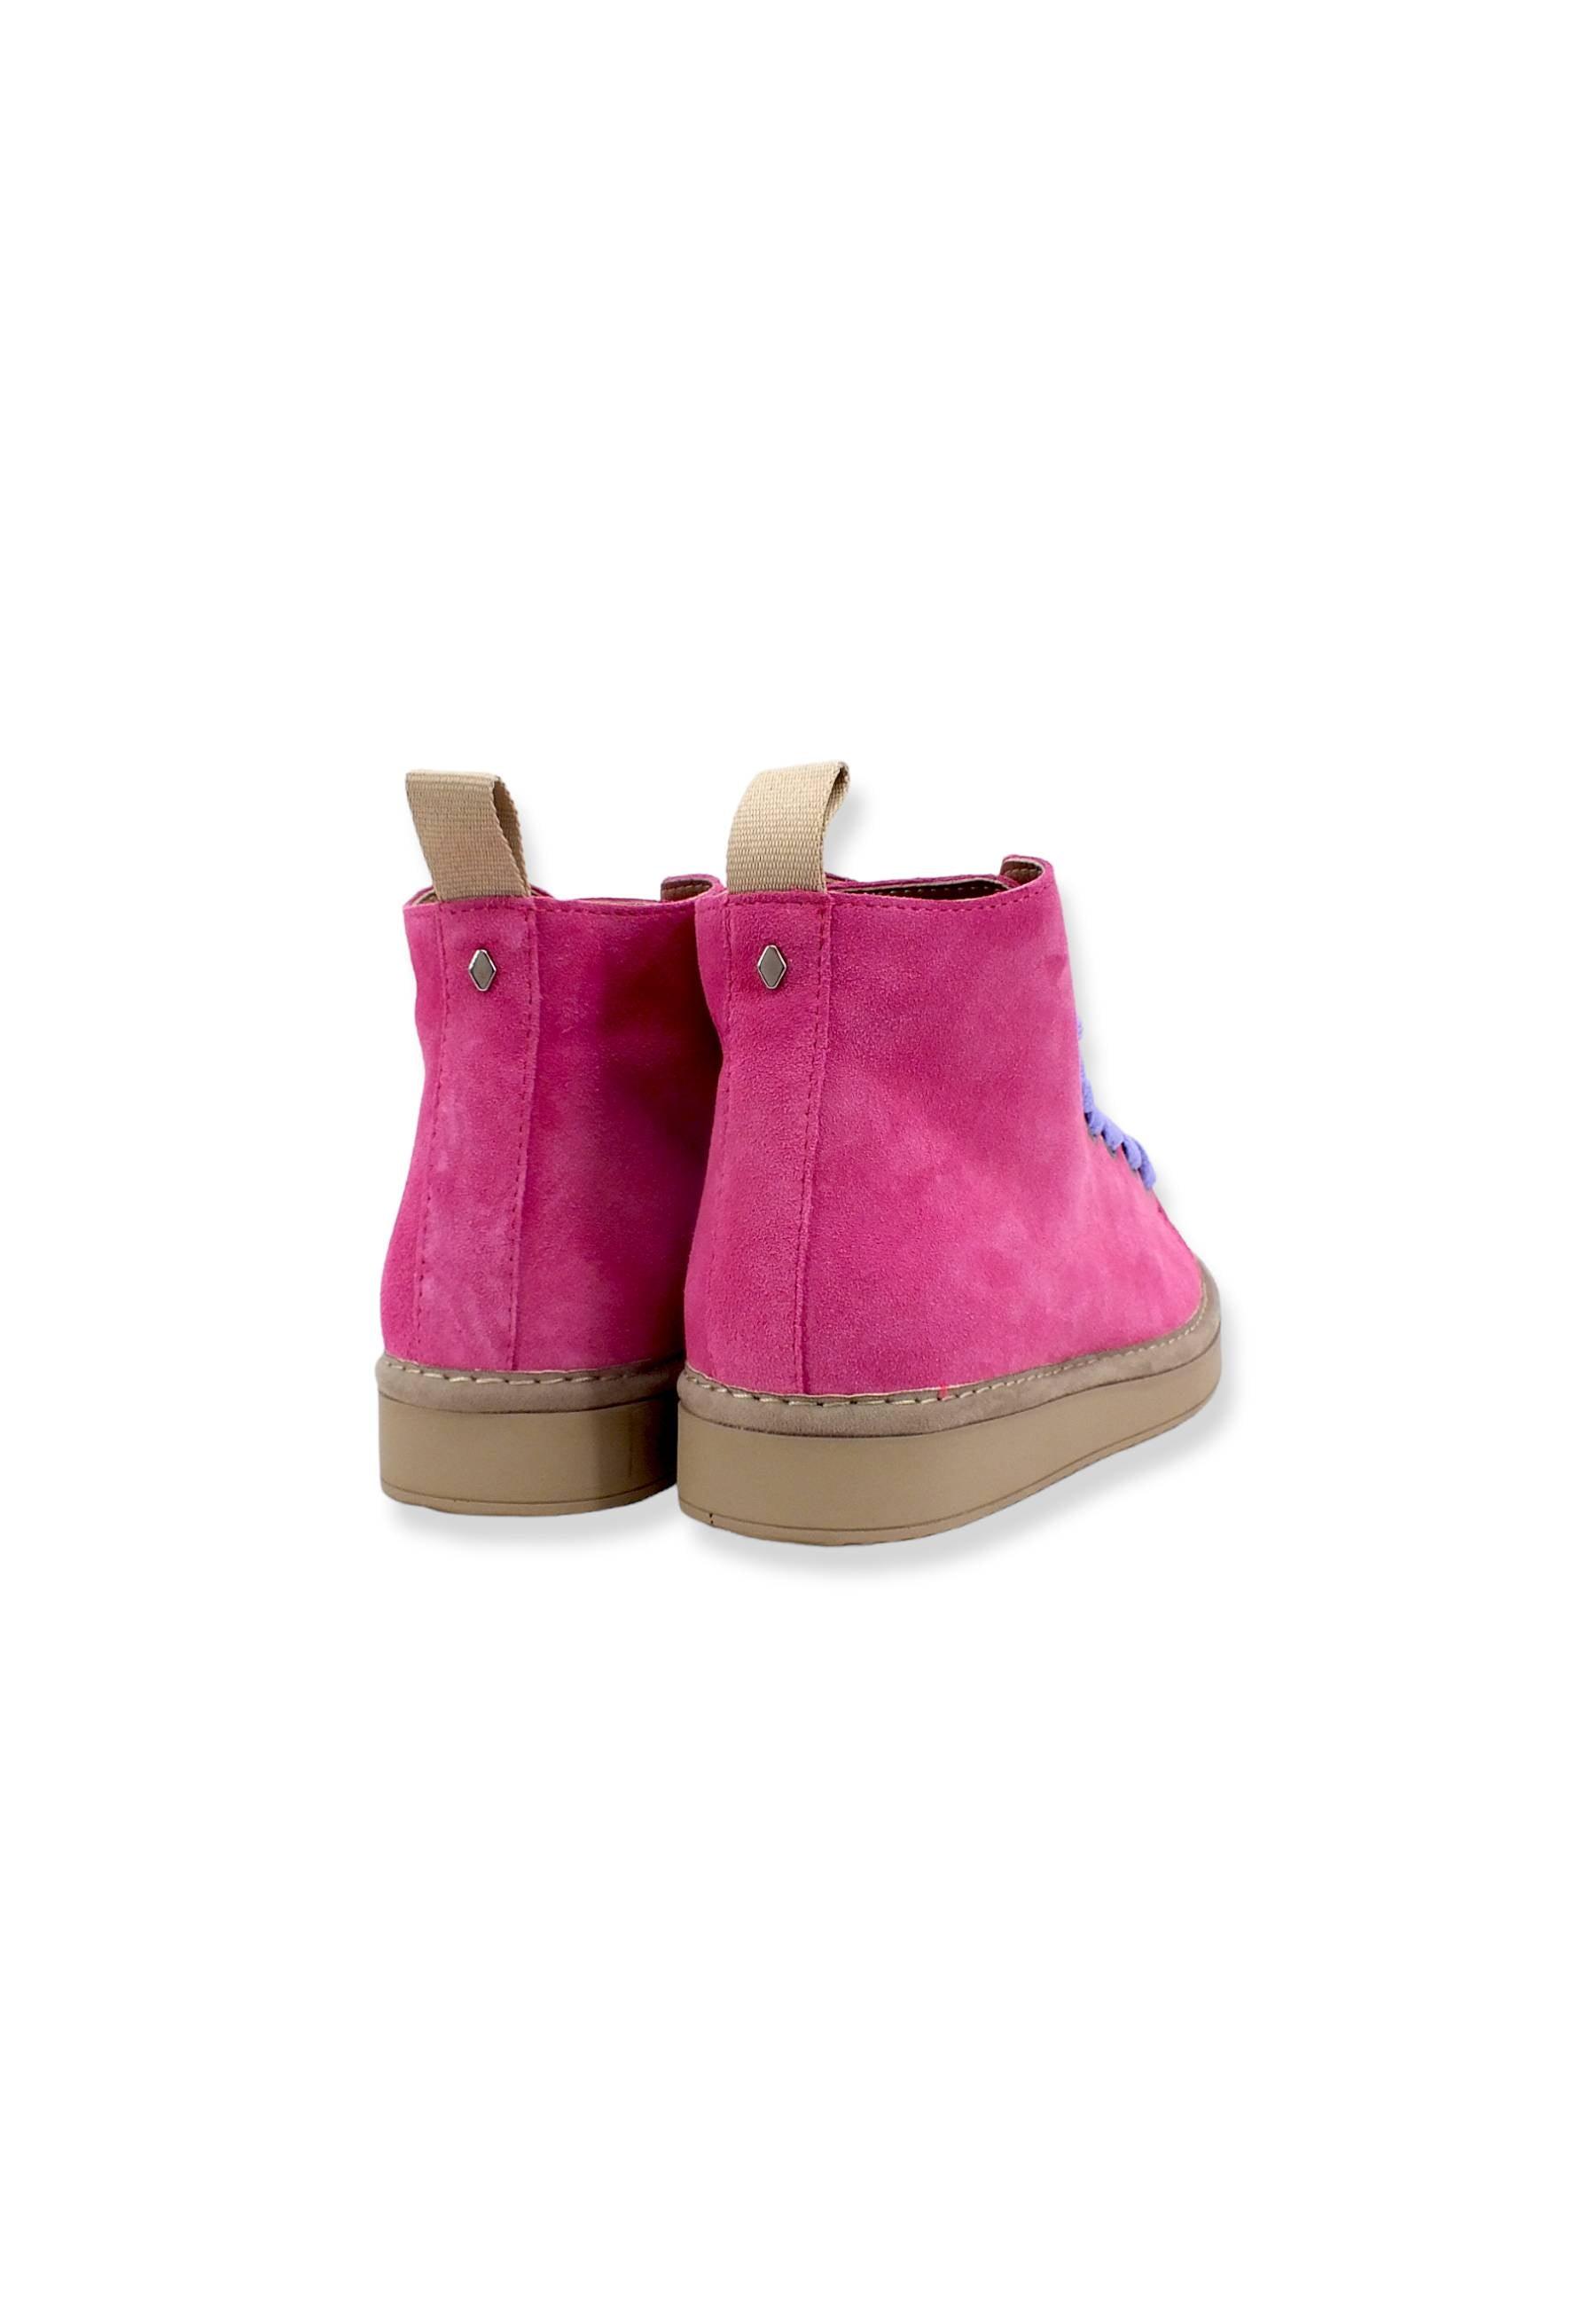 PAN CHIC Ankle Boot Sneaker Donna Dancing Pink Urban Violet P01W1400200005 - Sandrini Calzature e Abbigliamento